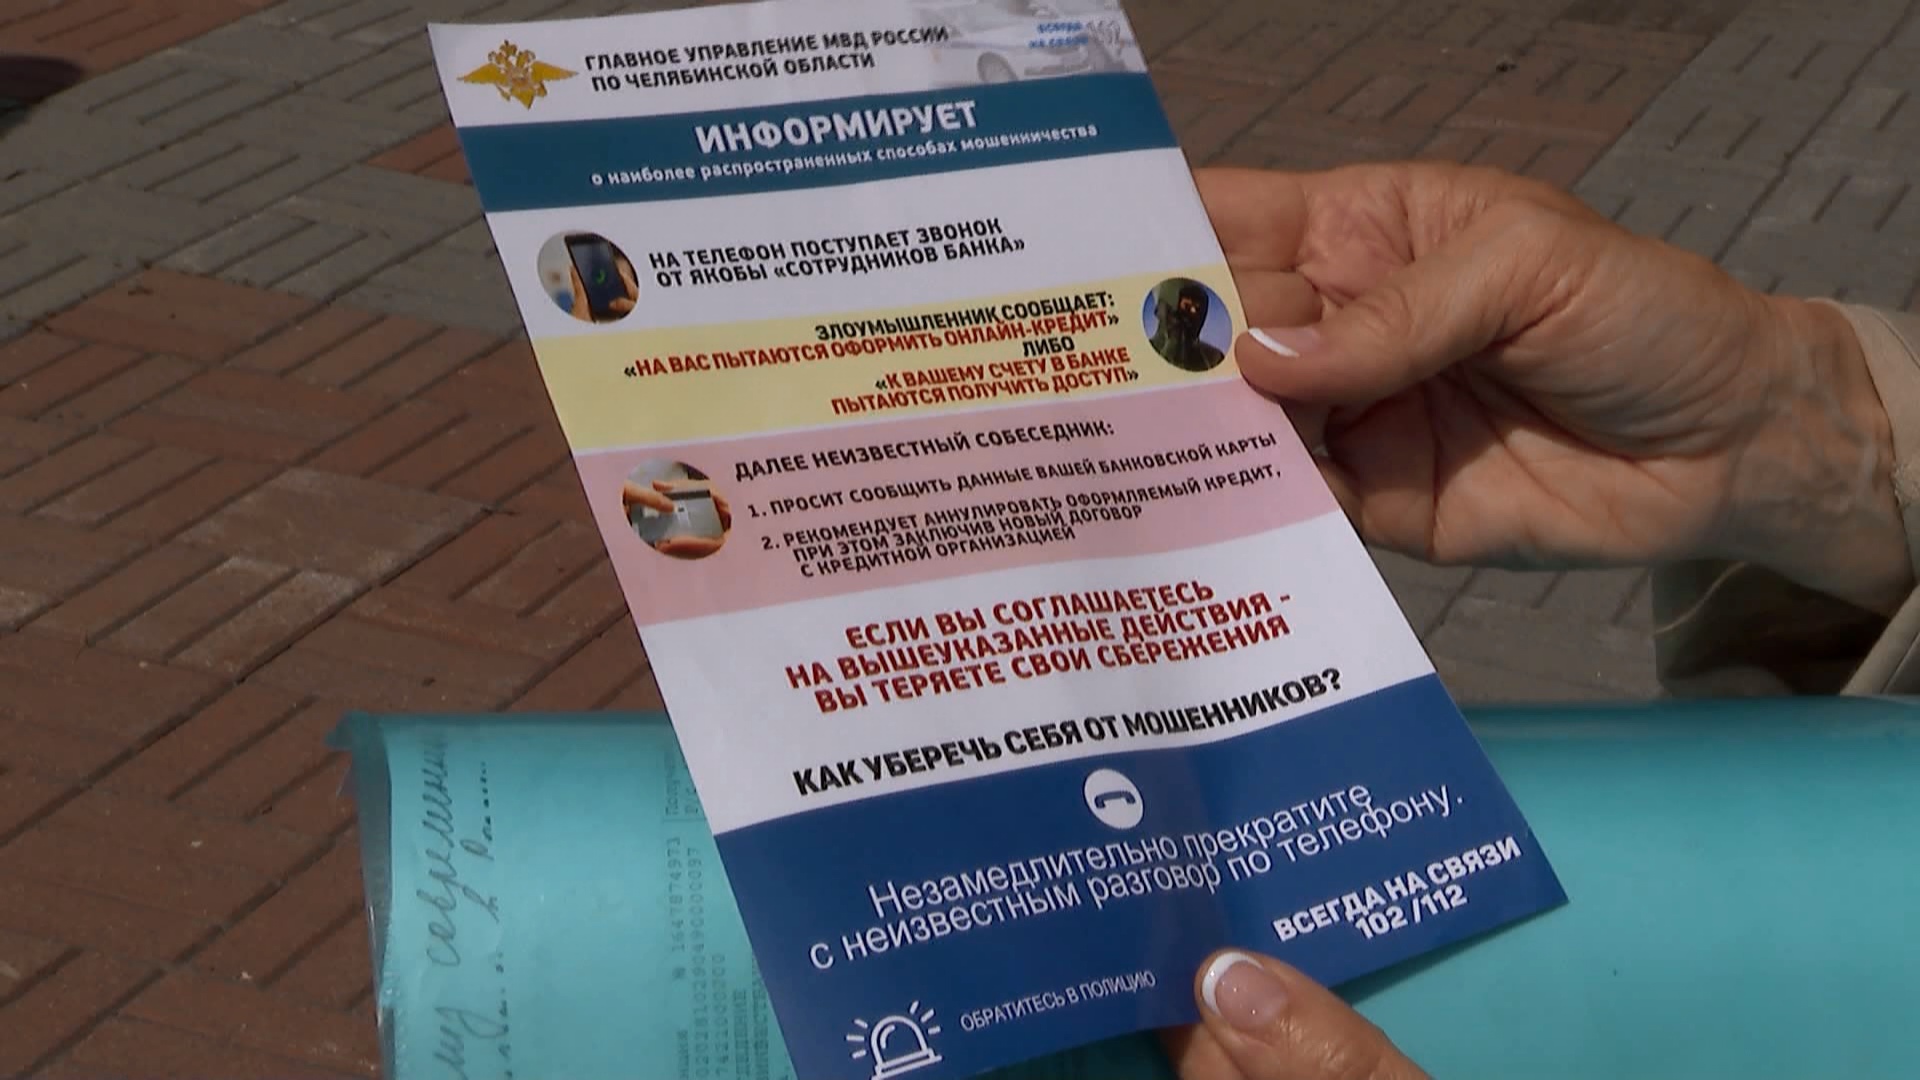 Сотрудники банка, полиция и психолог помогли пенсионерке из Челябинска сберечь деньги